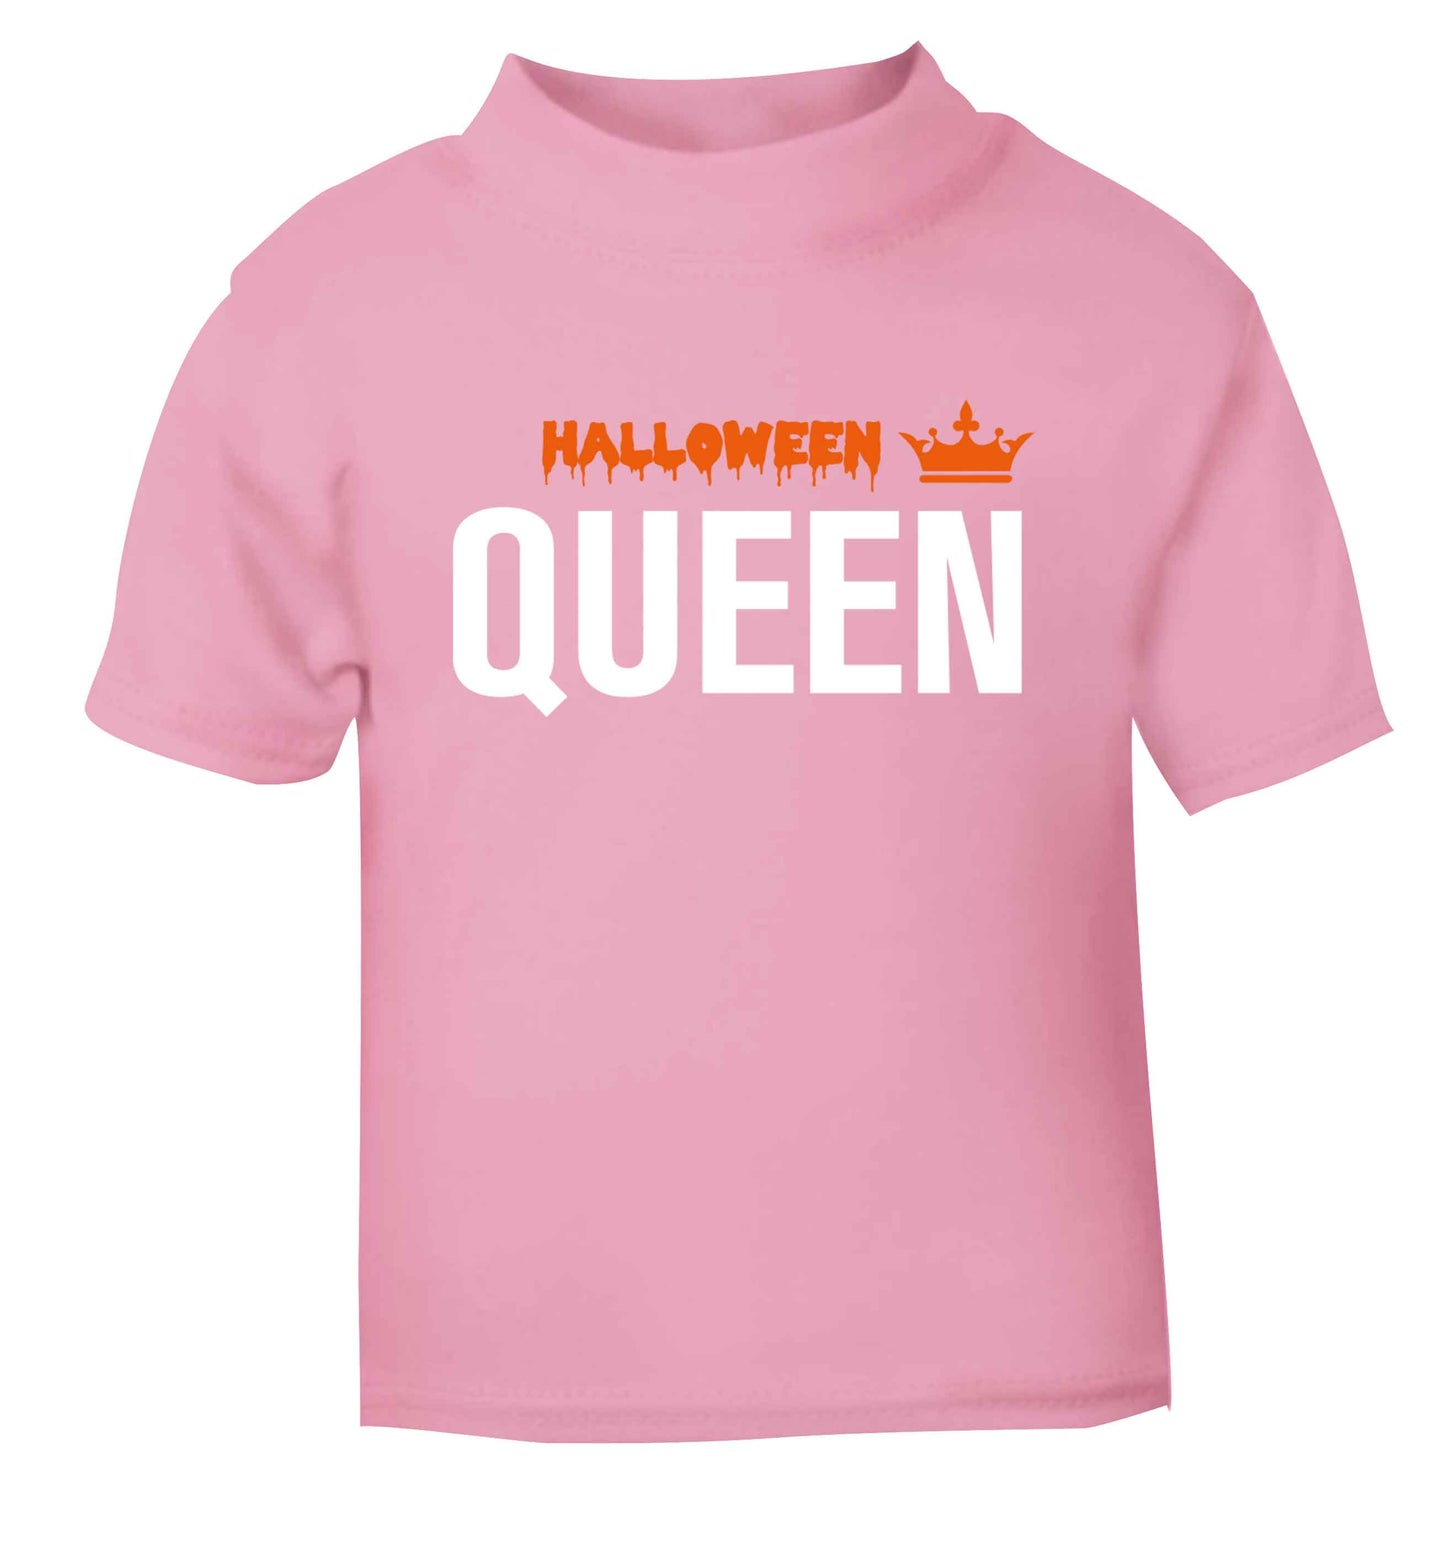 Halloween queen light pink baby toddler Tshirt 2 Years